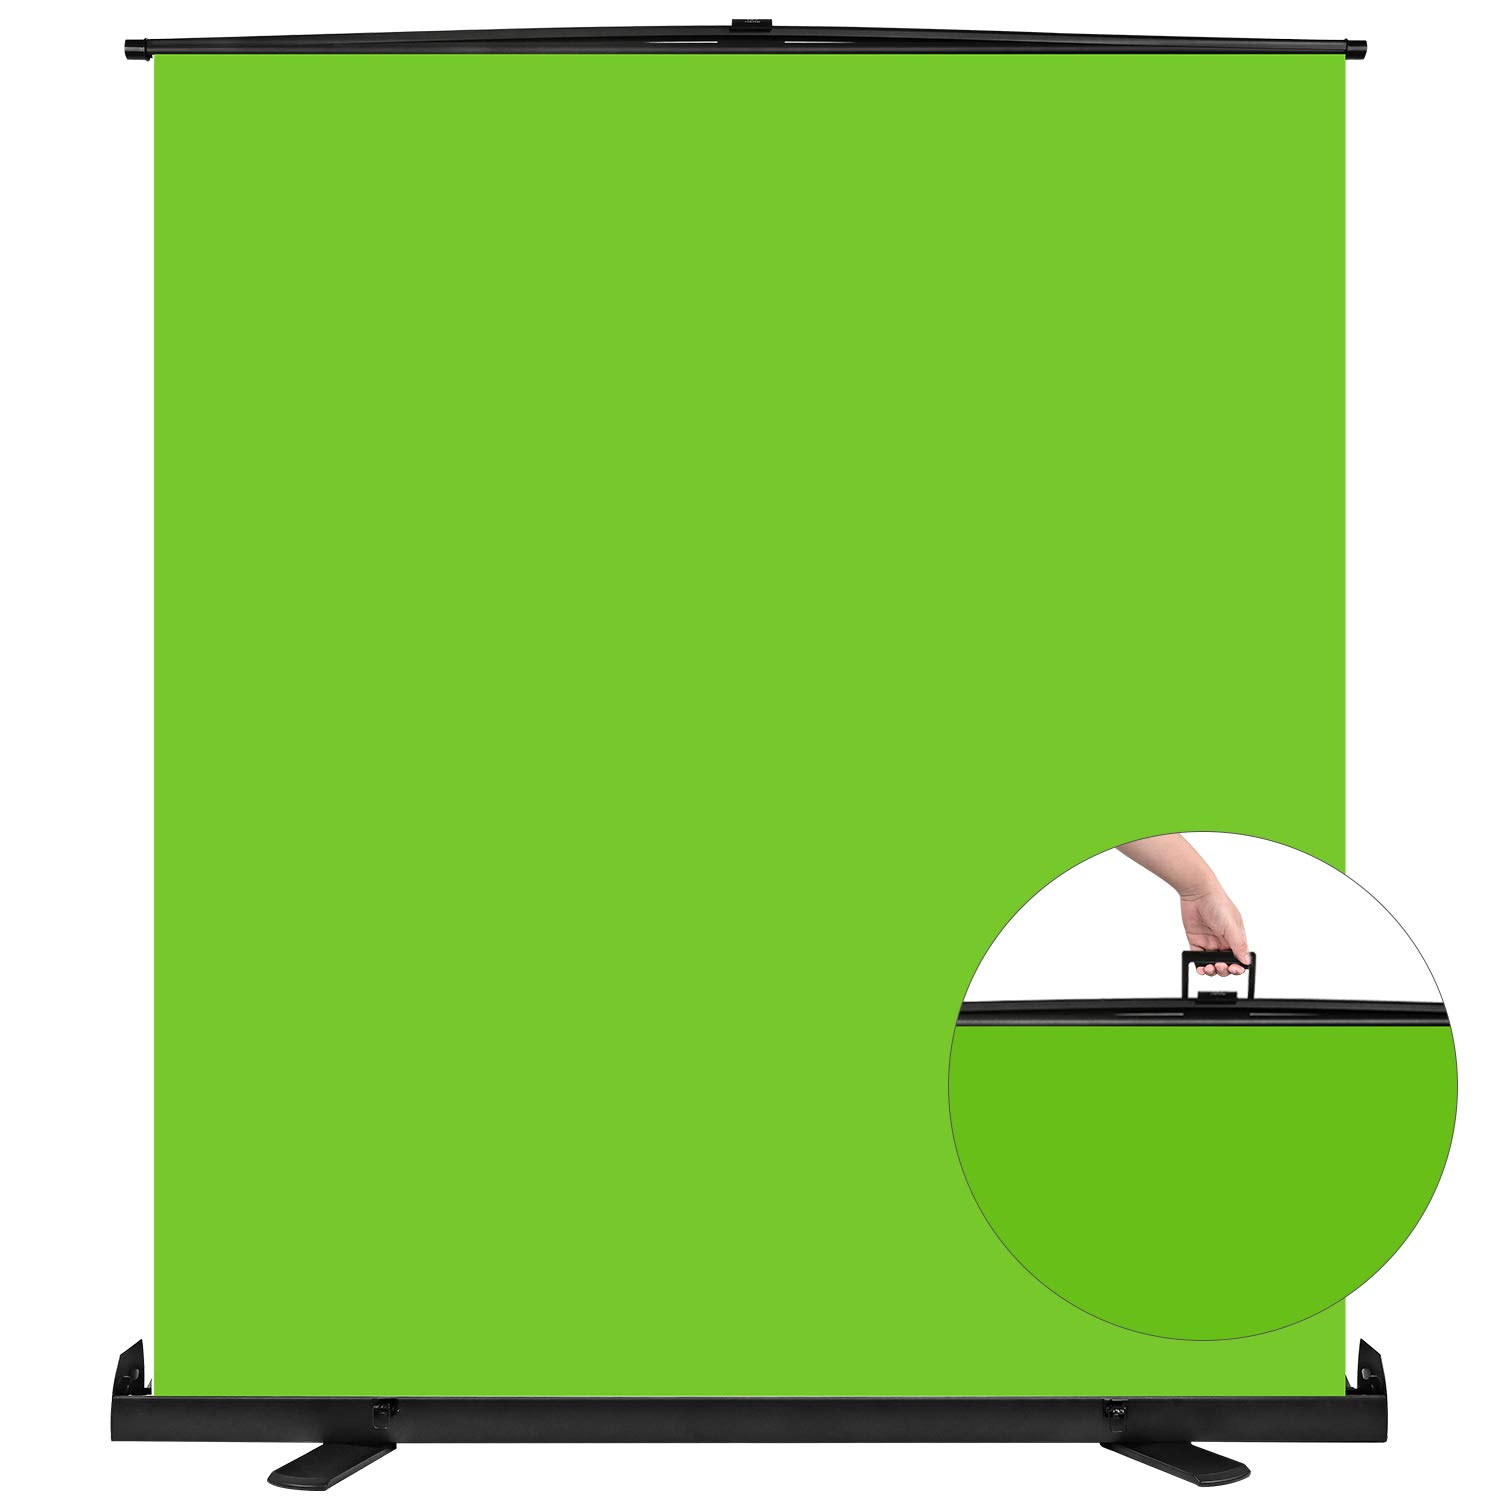 Yesker Green Screen: Yesker Green Screen là một sản phẩm vô cùng hữu ích cho những người yêu thích làm video. Nếu bạn quan tâm đến sản phẩm này, đừng bỏ lỡ hình ảnh liên quan để tìm hiểu thêm về Yesker Green Screen nhé!